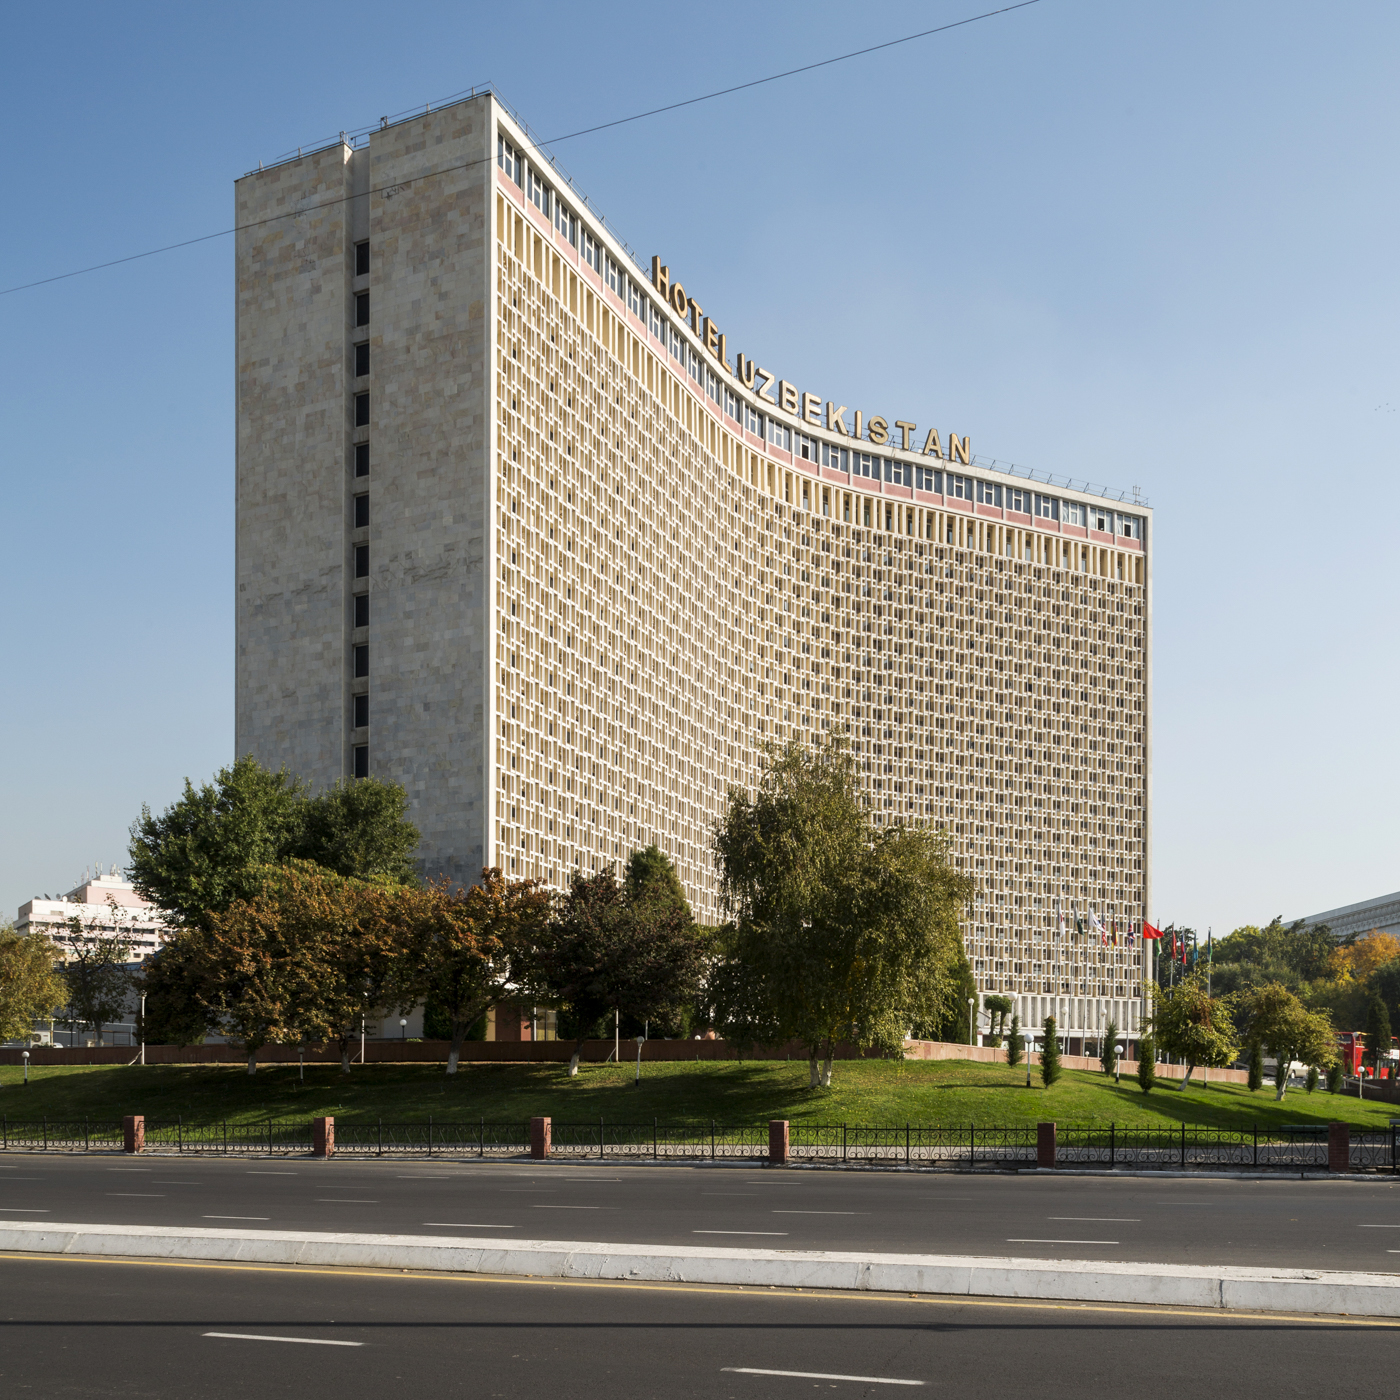 Hotel Uzbekistan, by I. Merport, L. Yershova, and V. Rashchupkin (1974). Tashkent, Uzbekistan. Photo: Stefano Perego